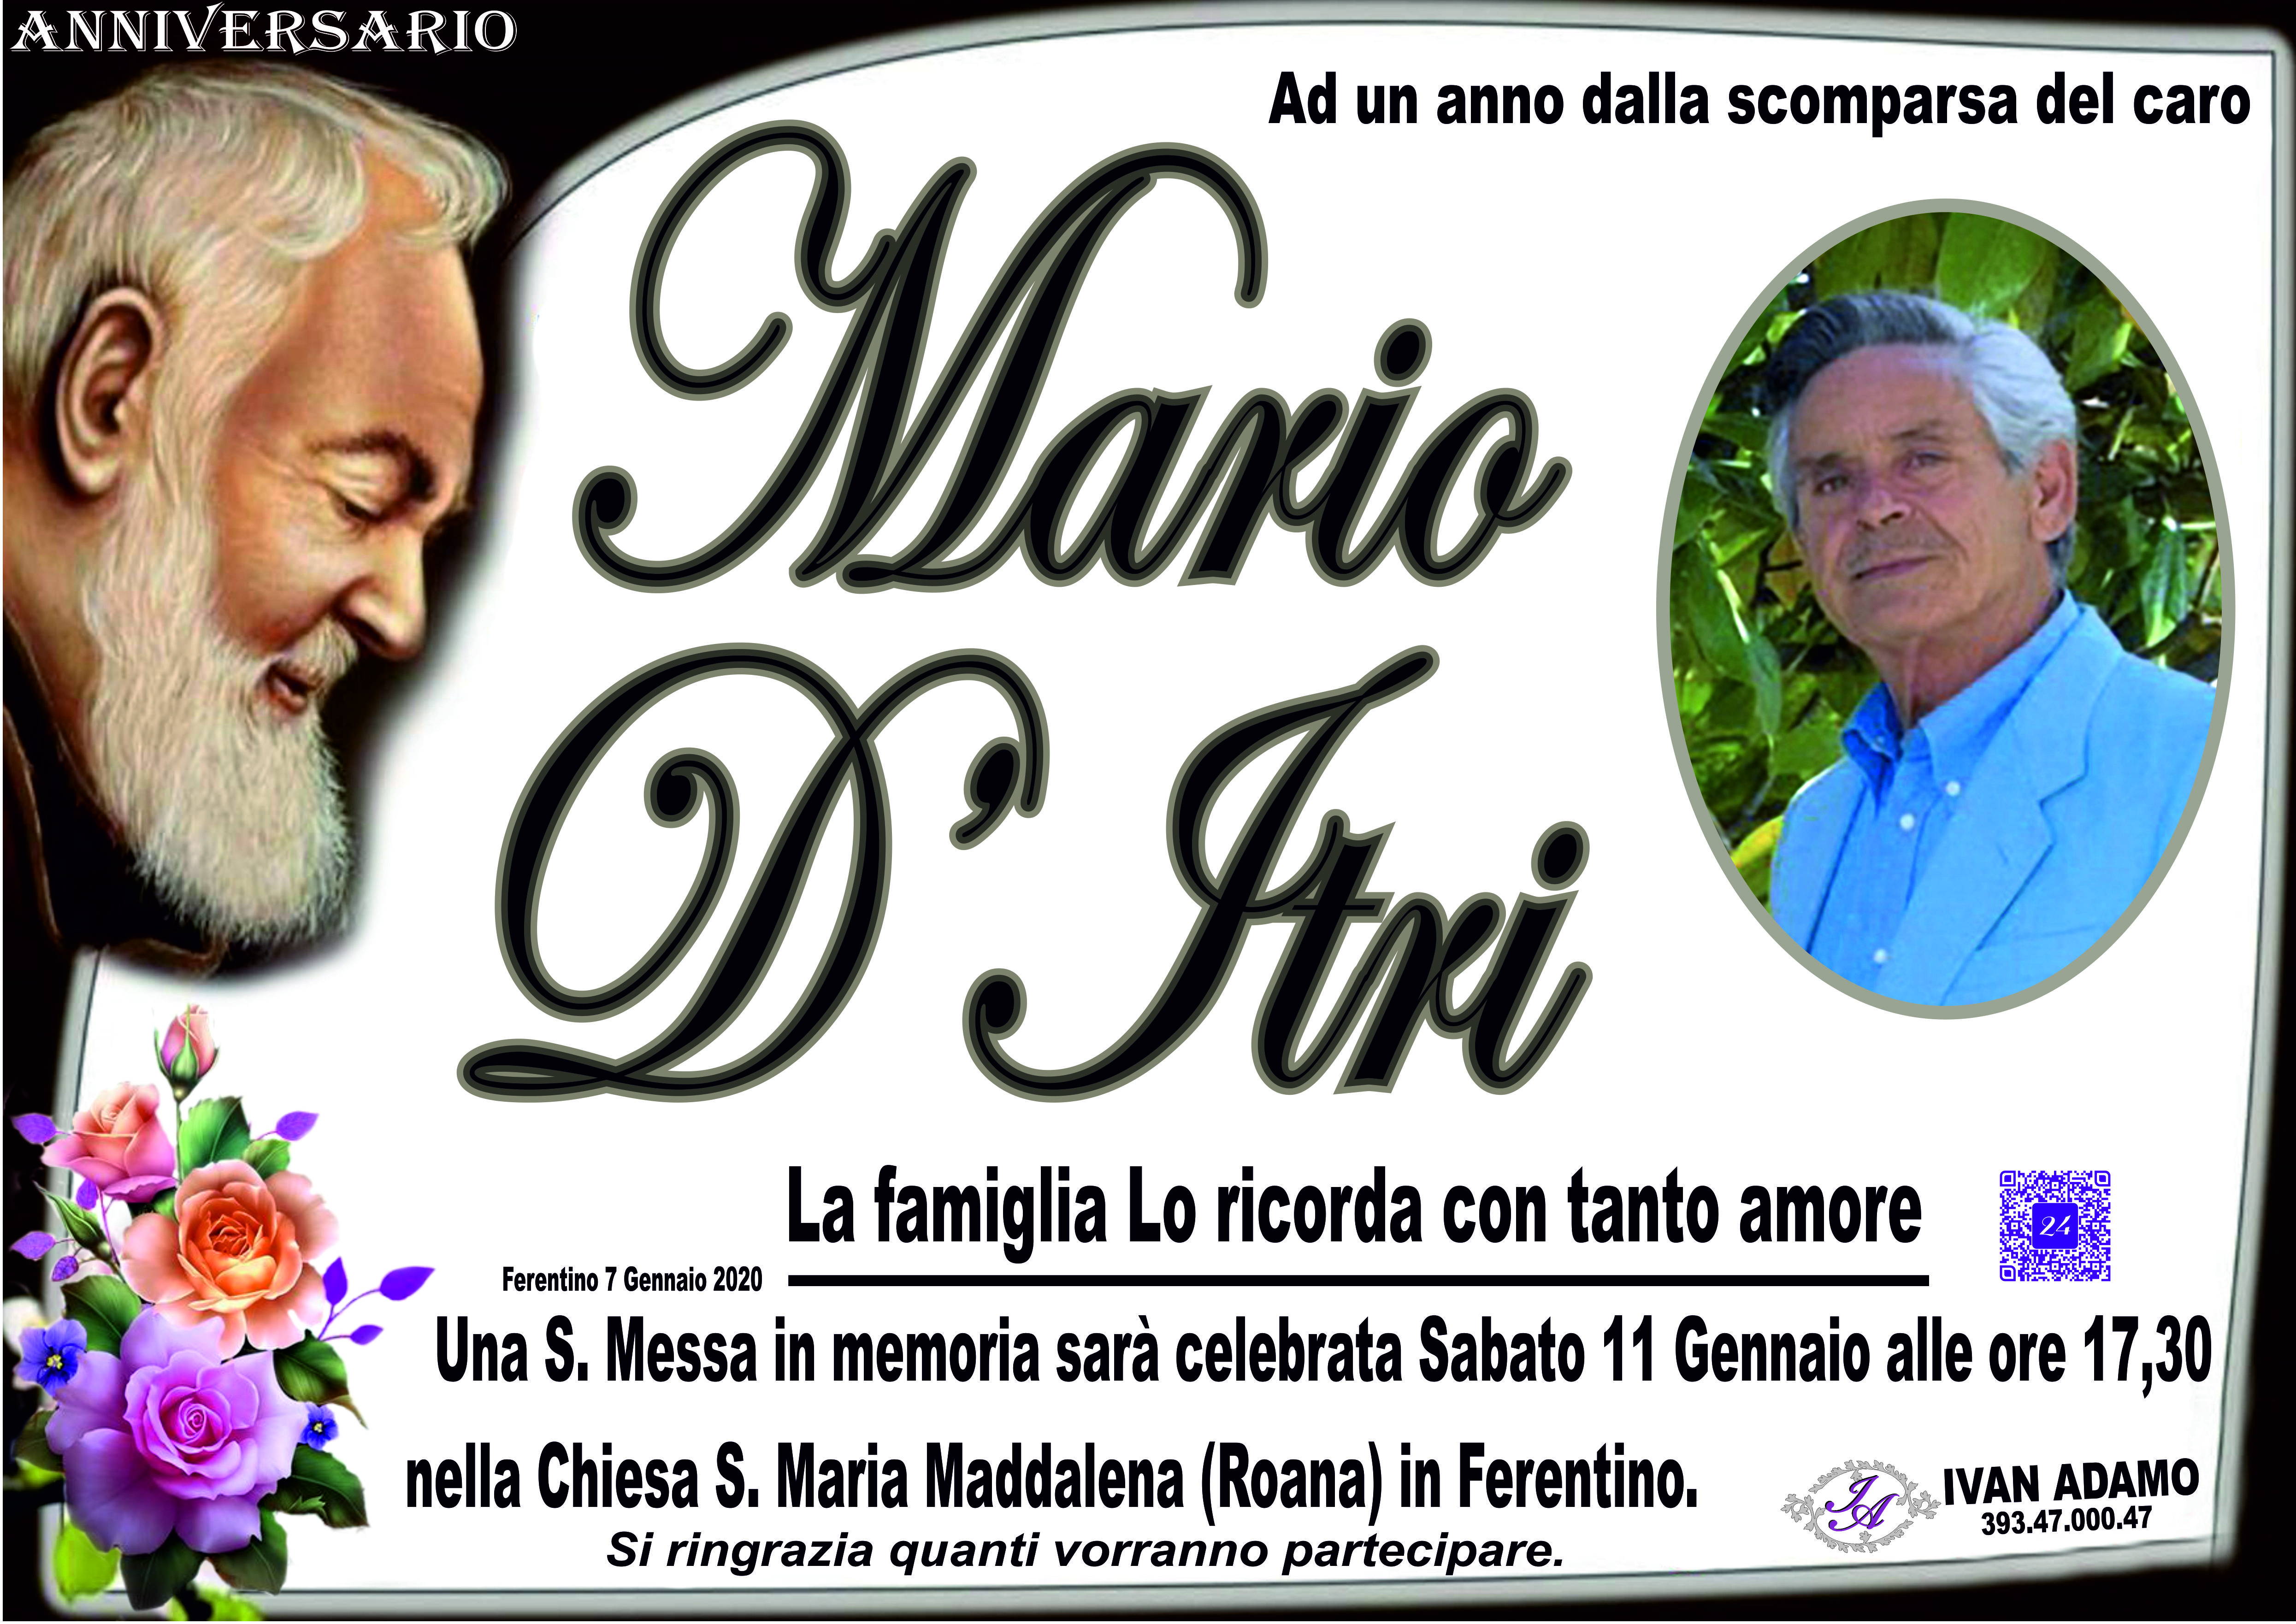 Mario D'Itri